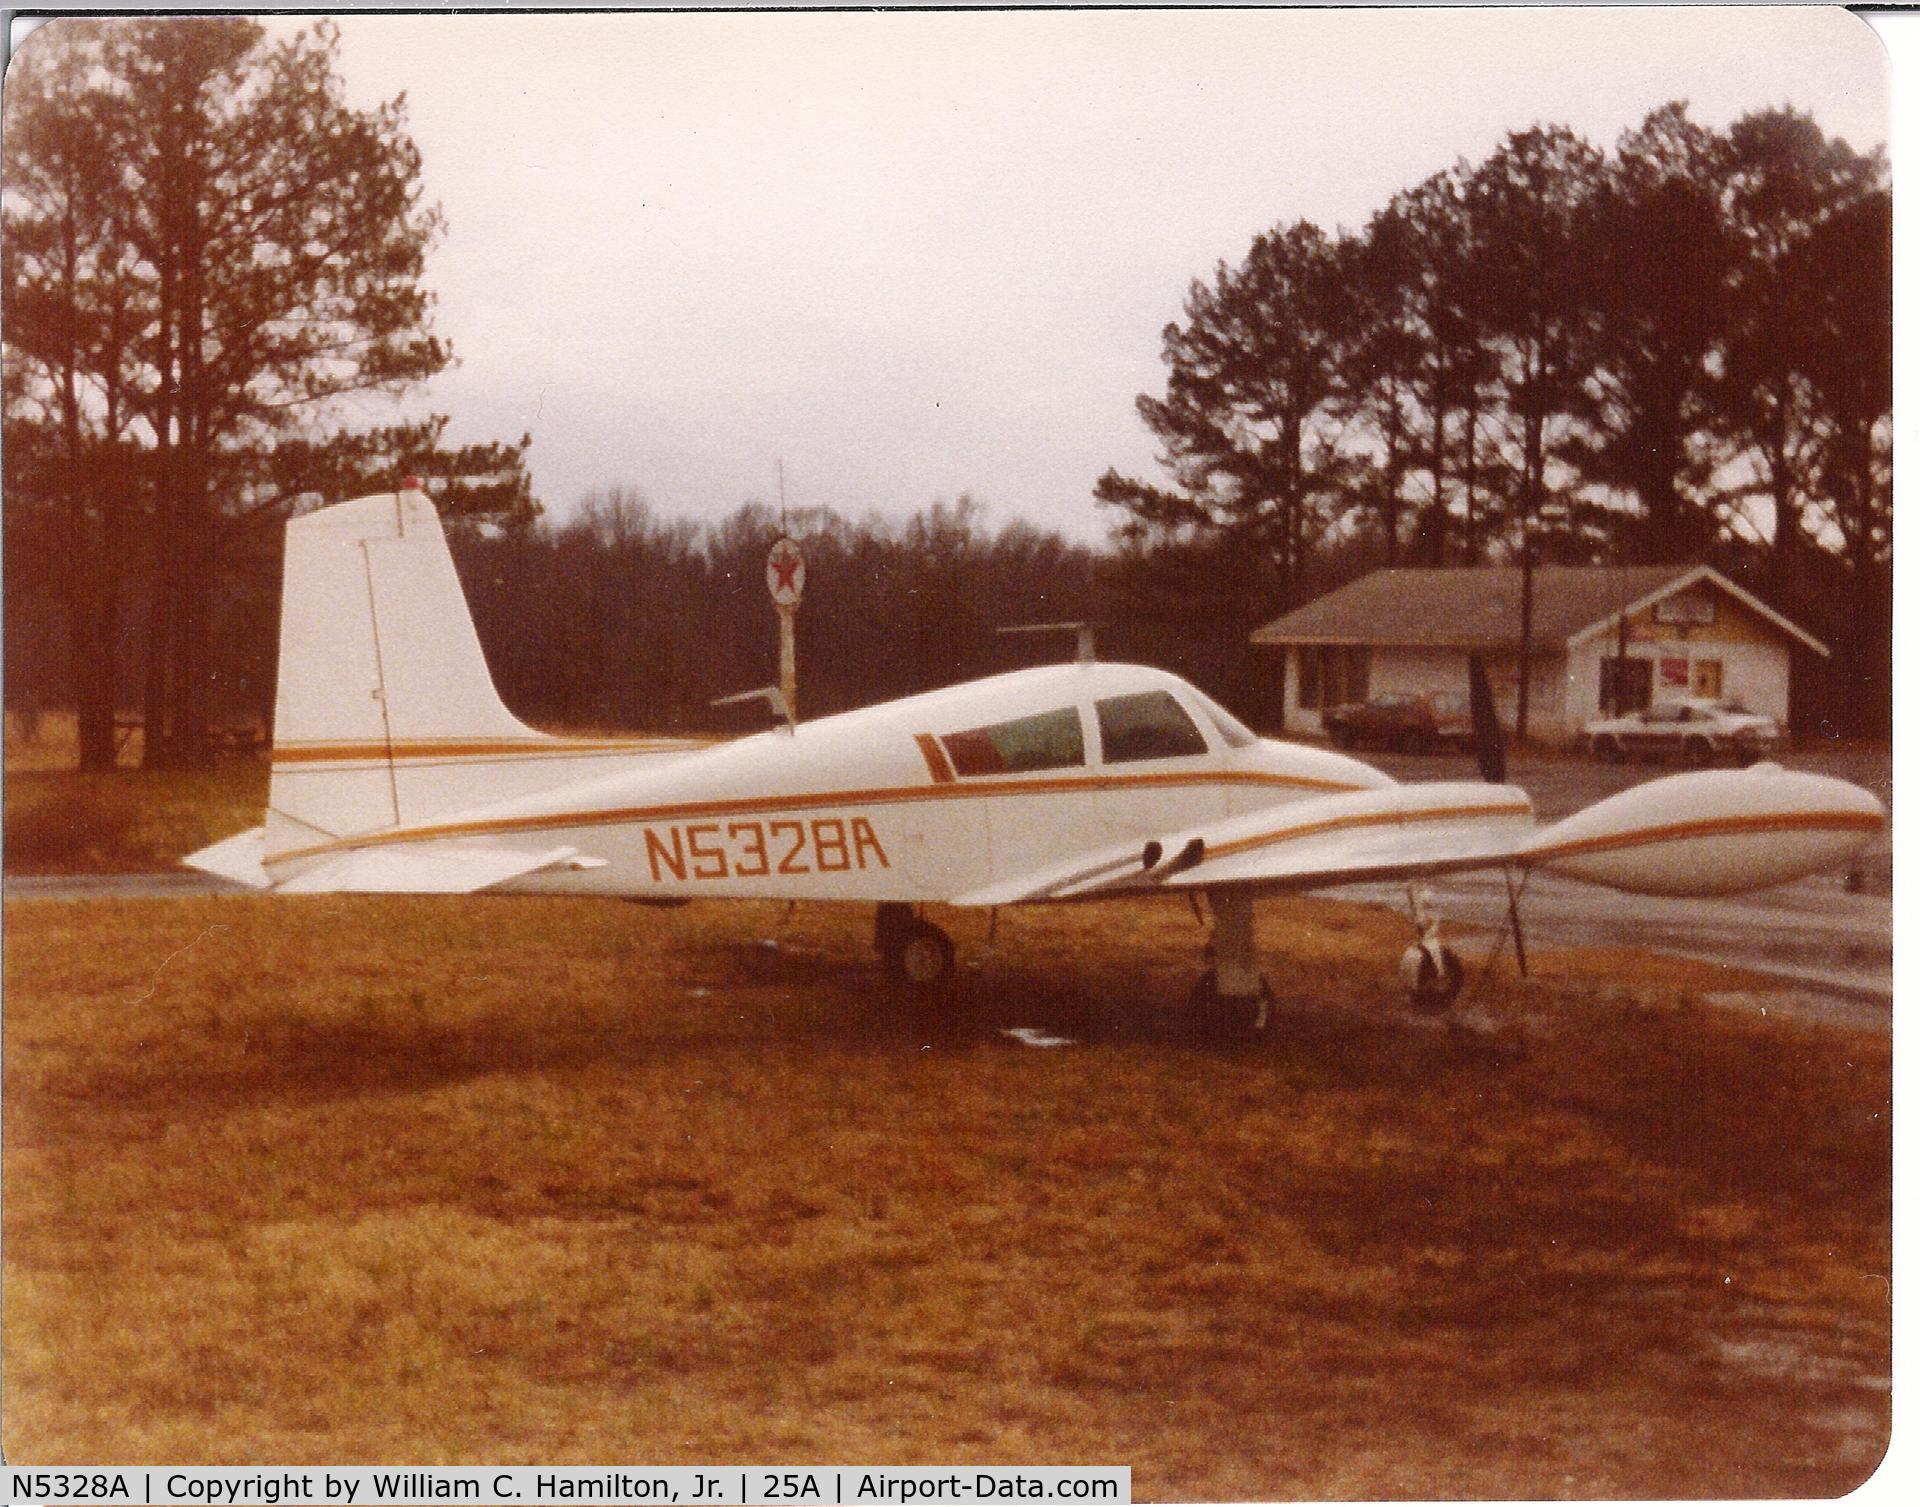 N5328A, Cessna 310 C/N 35528, Circa 1979.